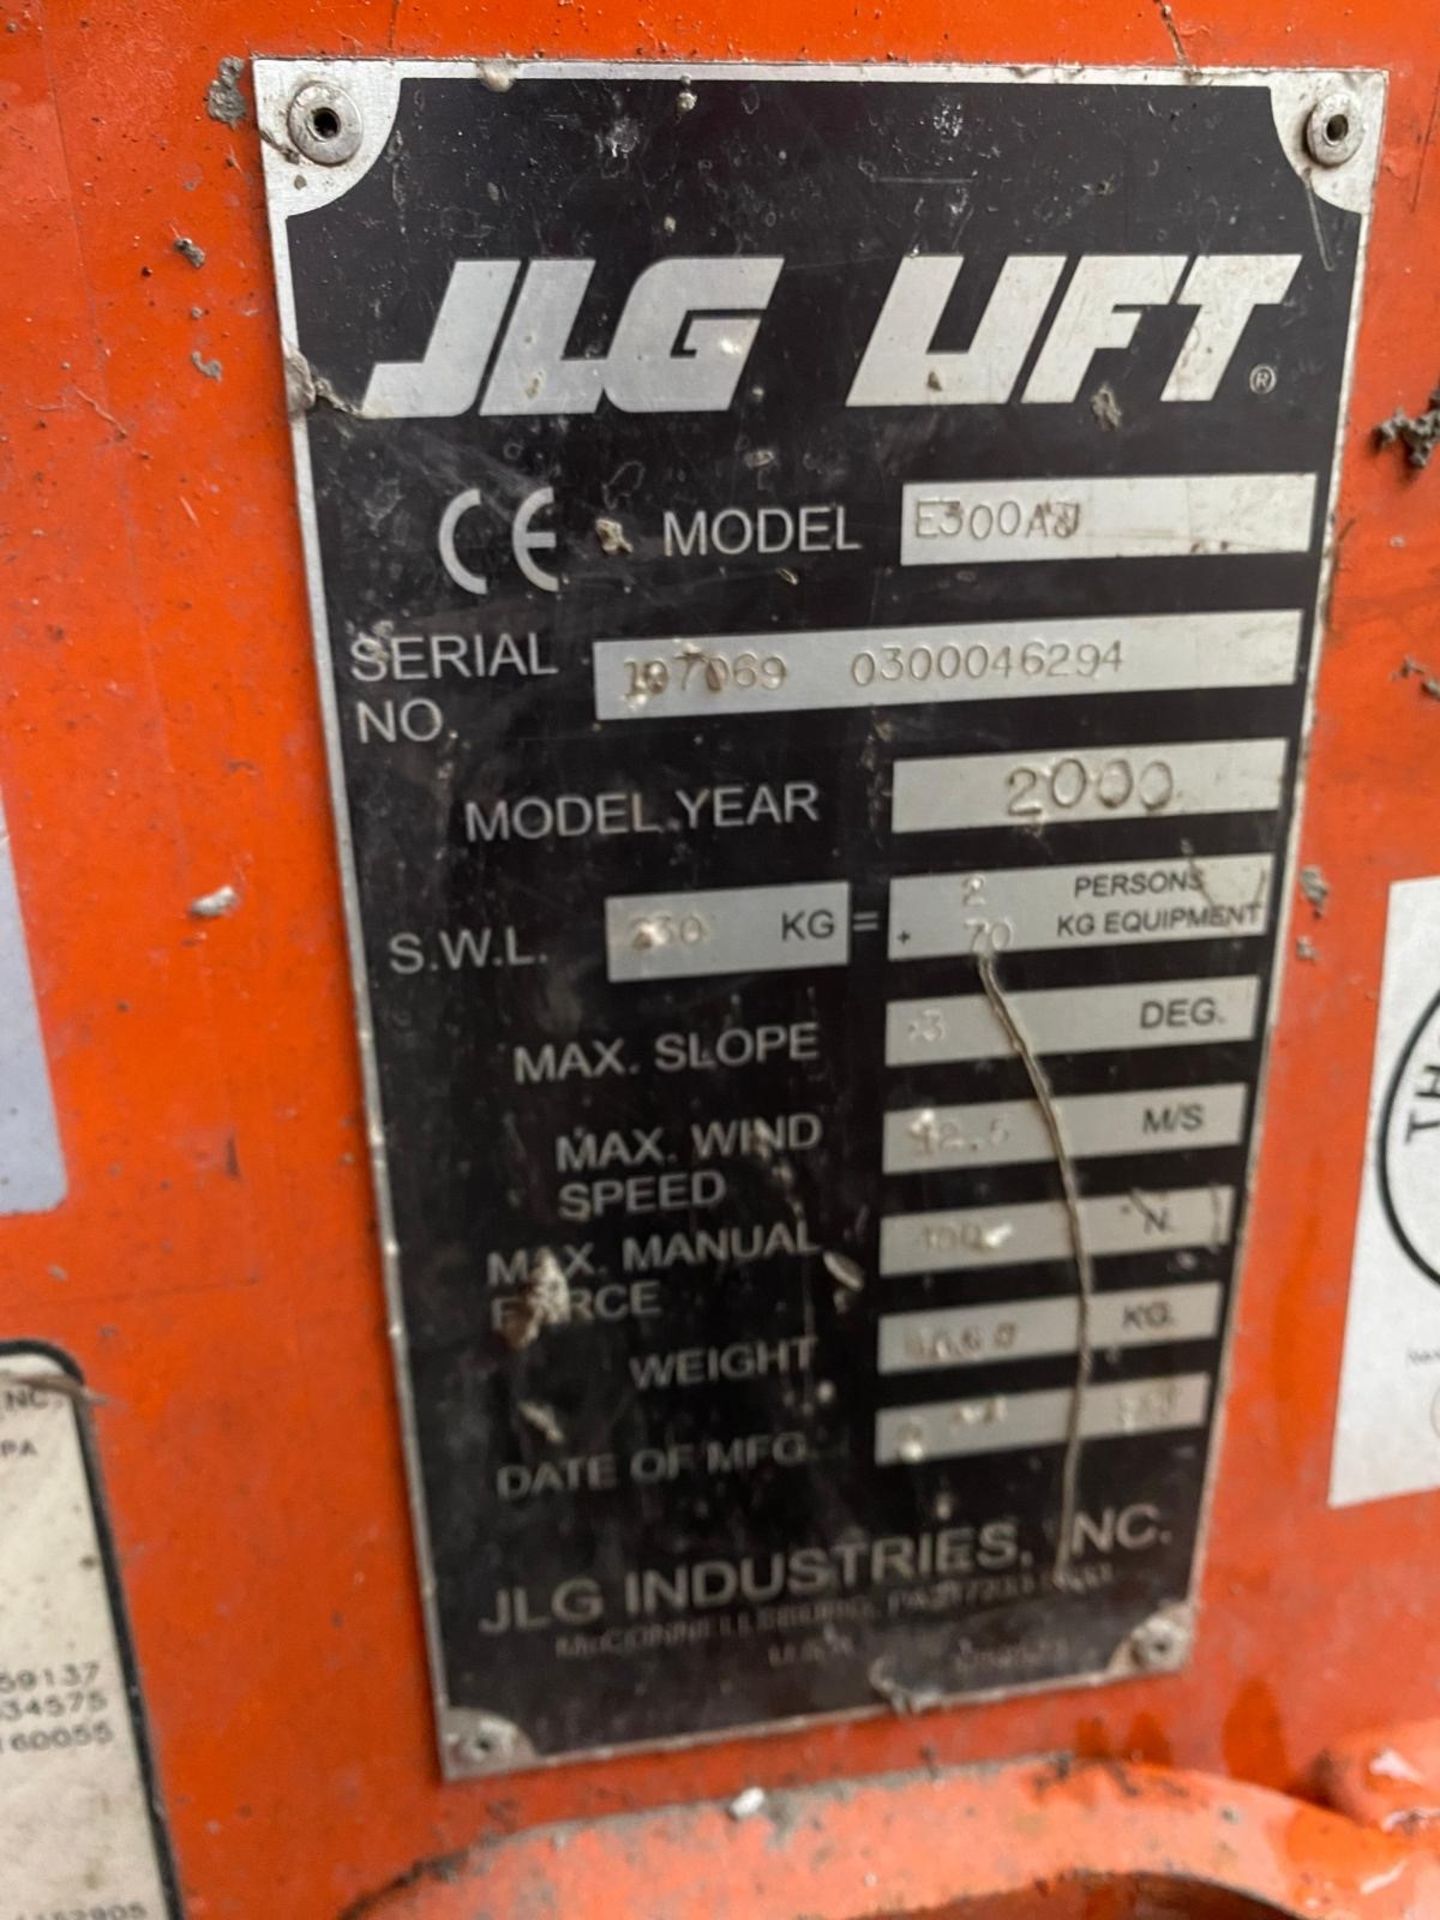 JLG Model E300 Cherry Picker Lift (2000 Model) - Image 7 of 12